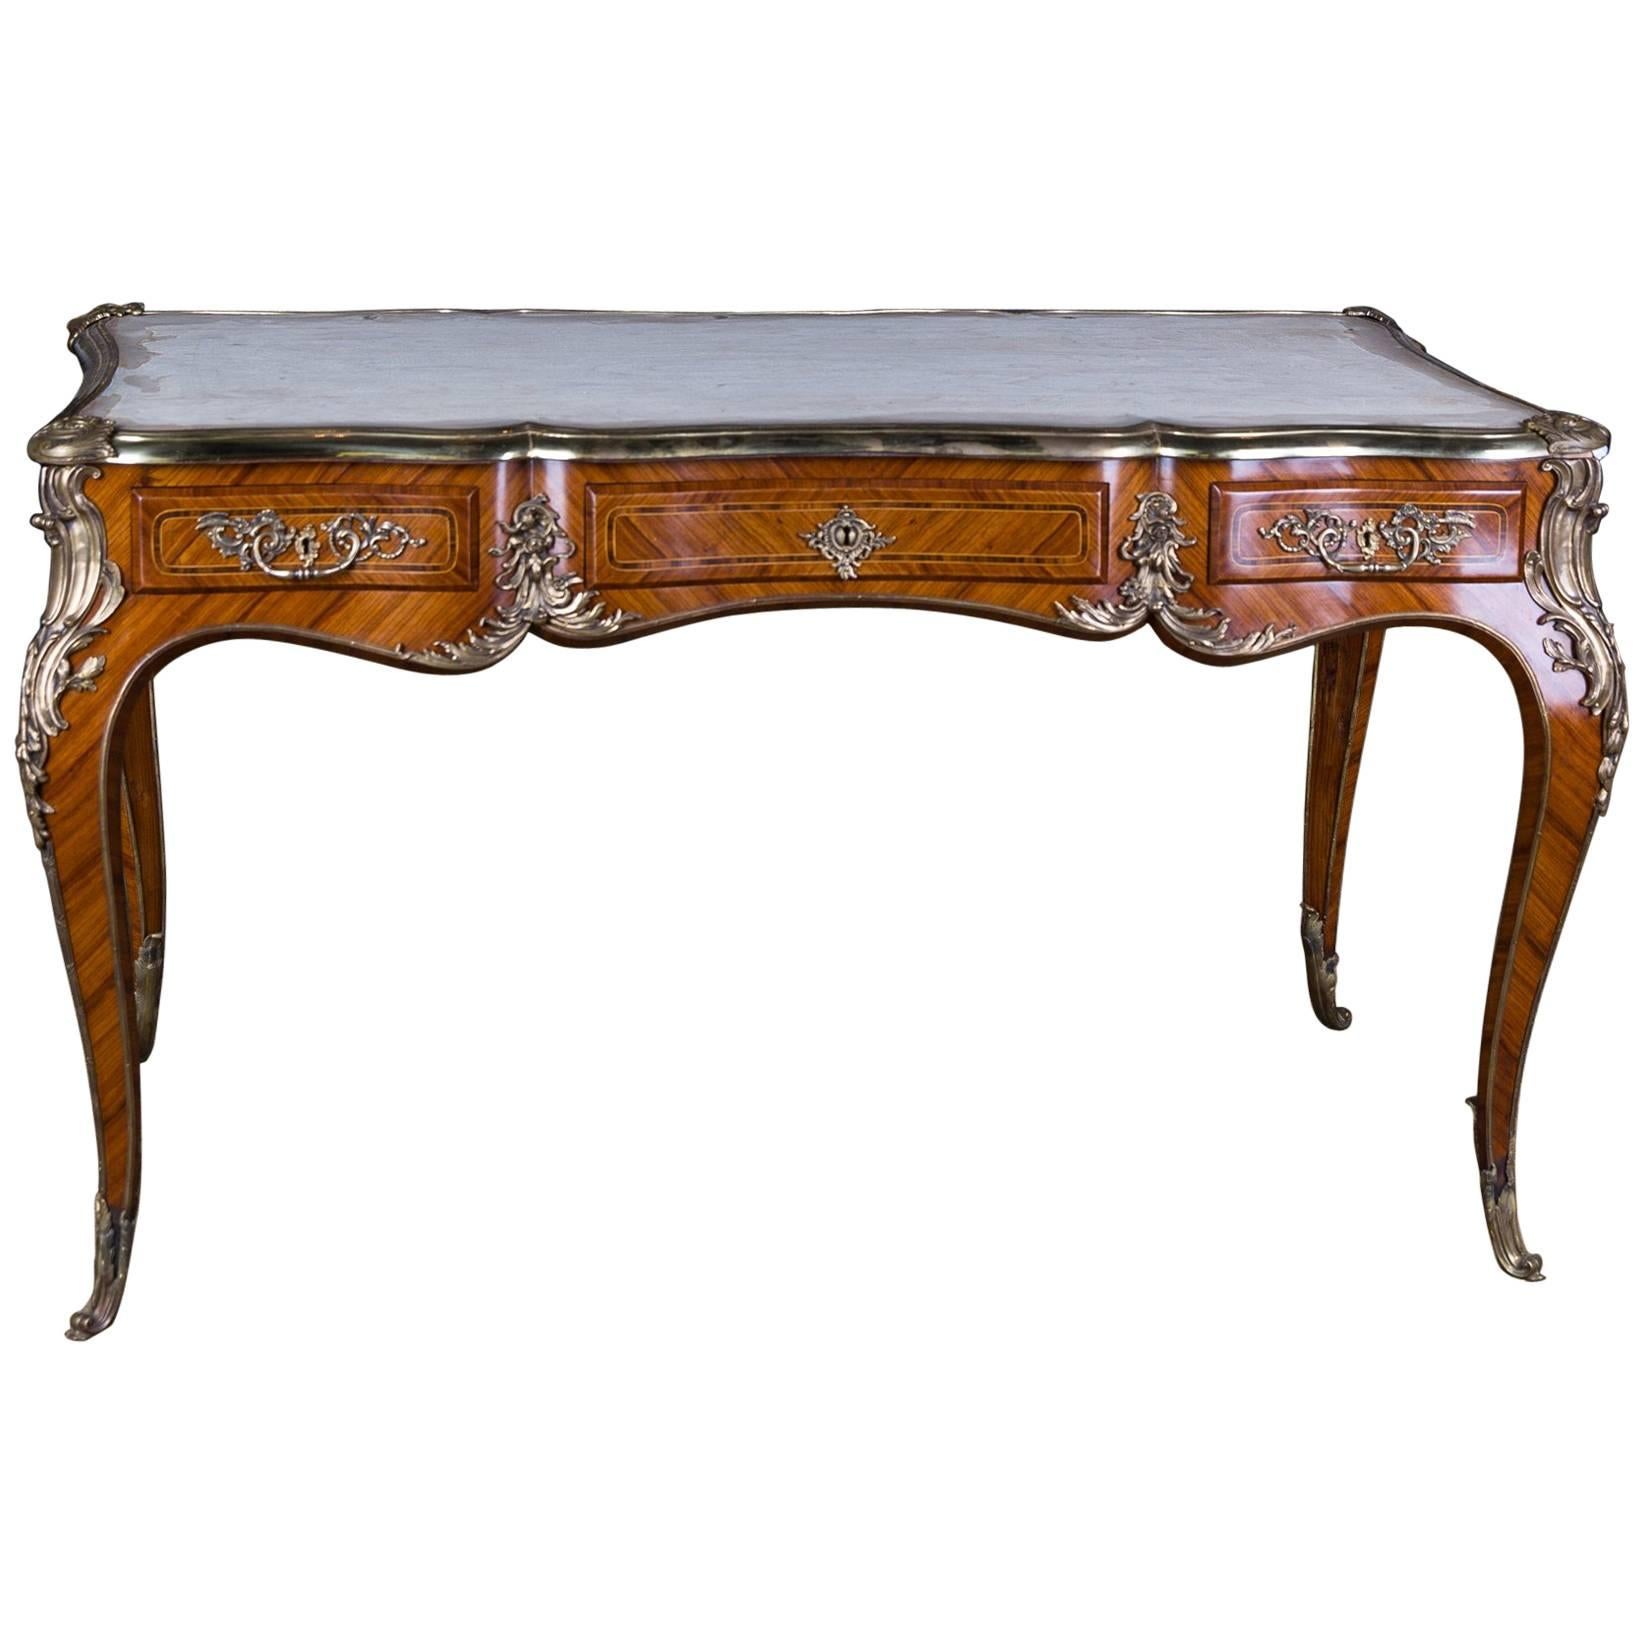  20th Century Desk Bureau Plat in Louis XV Style Excellent Quality